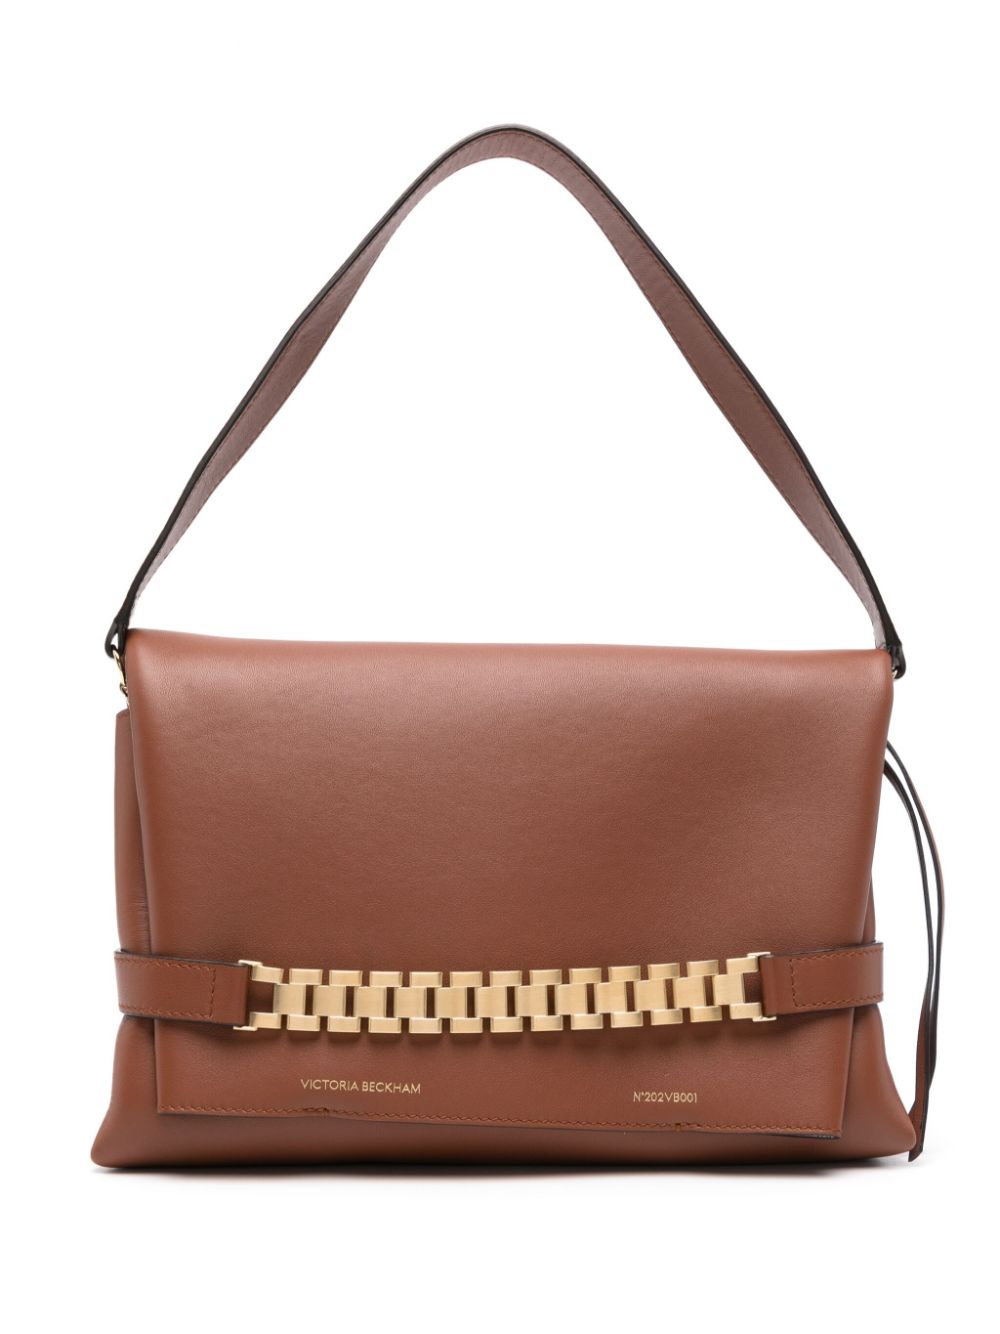 Victoria Beckham chain-link leather shoulder bag - Brown von Victoria Beckham